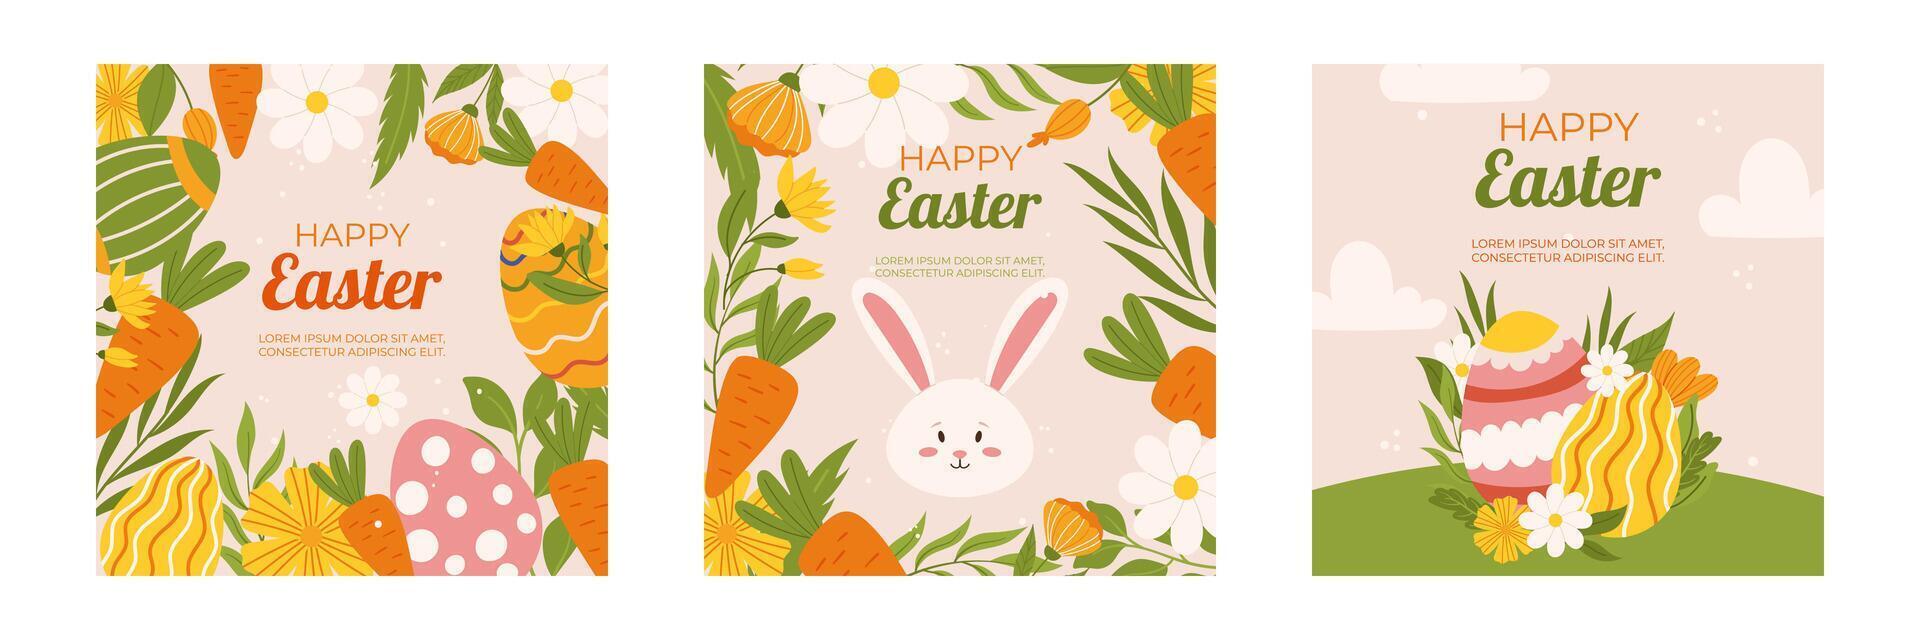 Pasen verzameling van plein sociaal media post sjabloon. ontwerp met bloemen, geschilderd eieren, konijn en wortel. hand- getrokken vlak vector illustratie